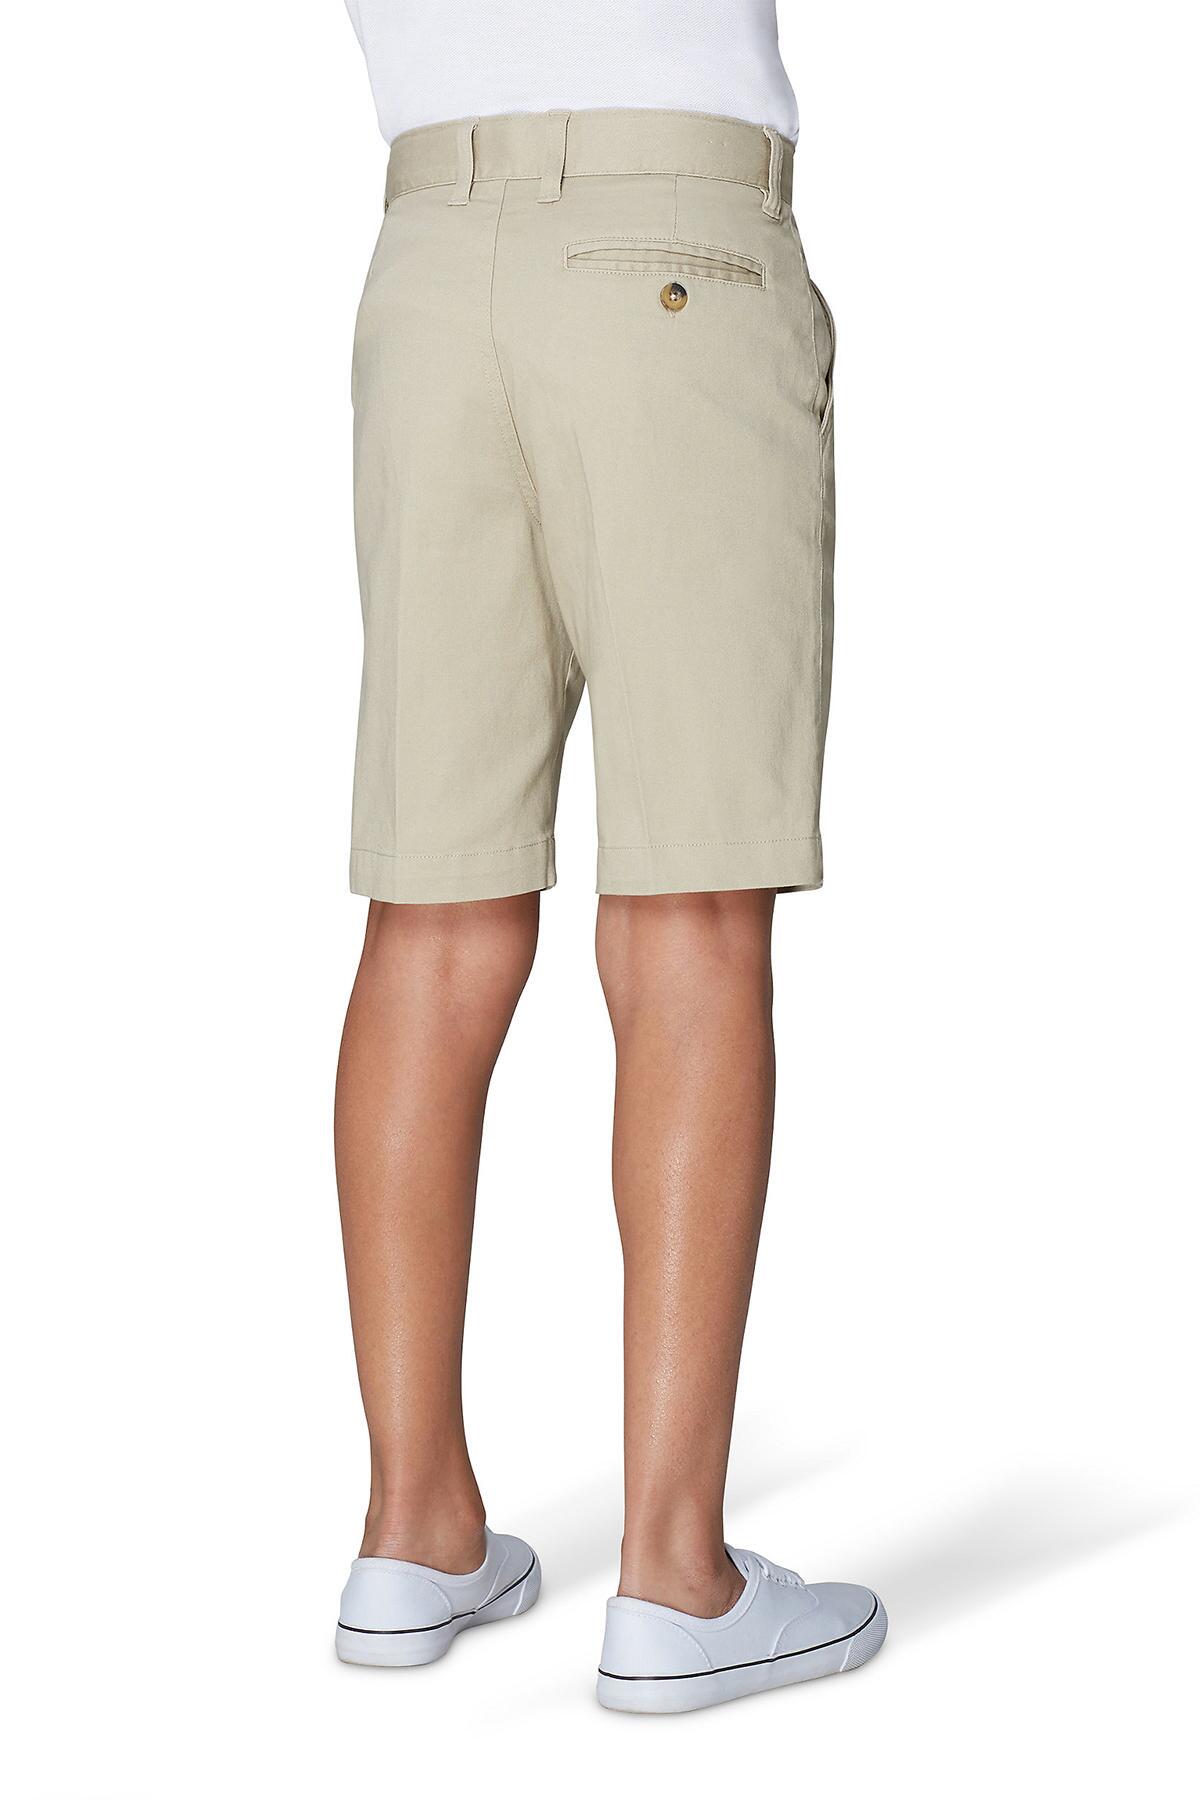 French Toast Unisex Flat Front Twill Shorts with Adjustable Waist 14 Khaki 